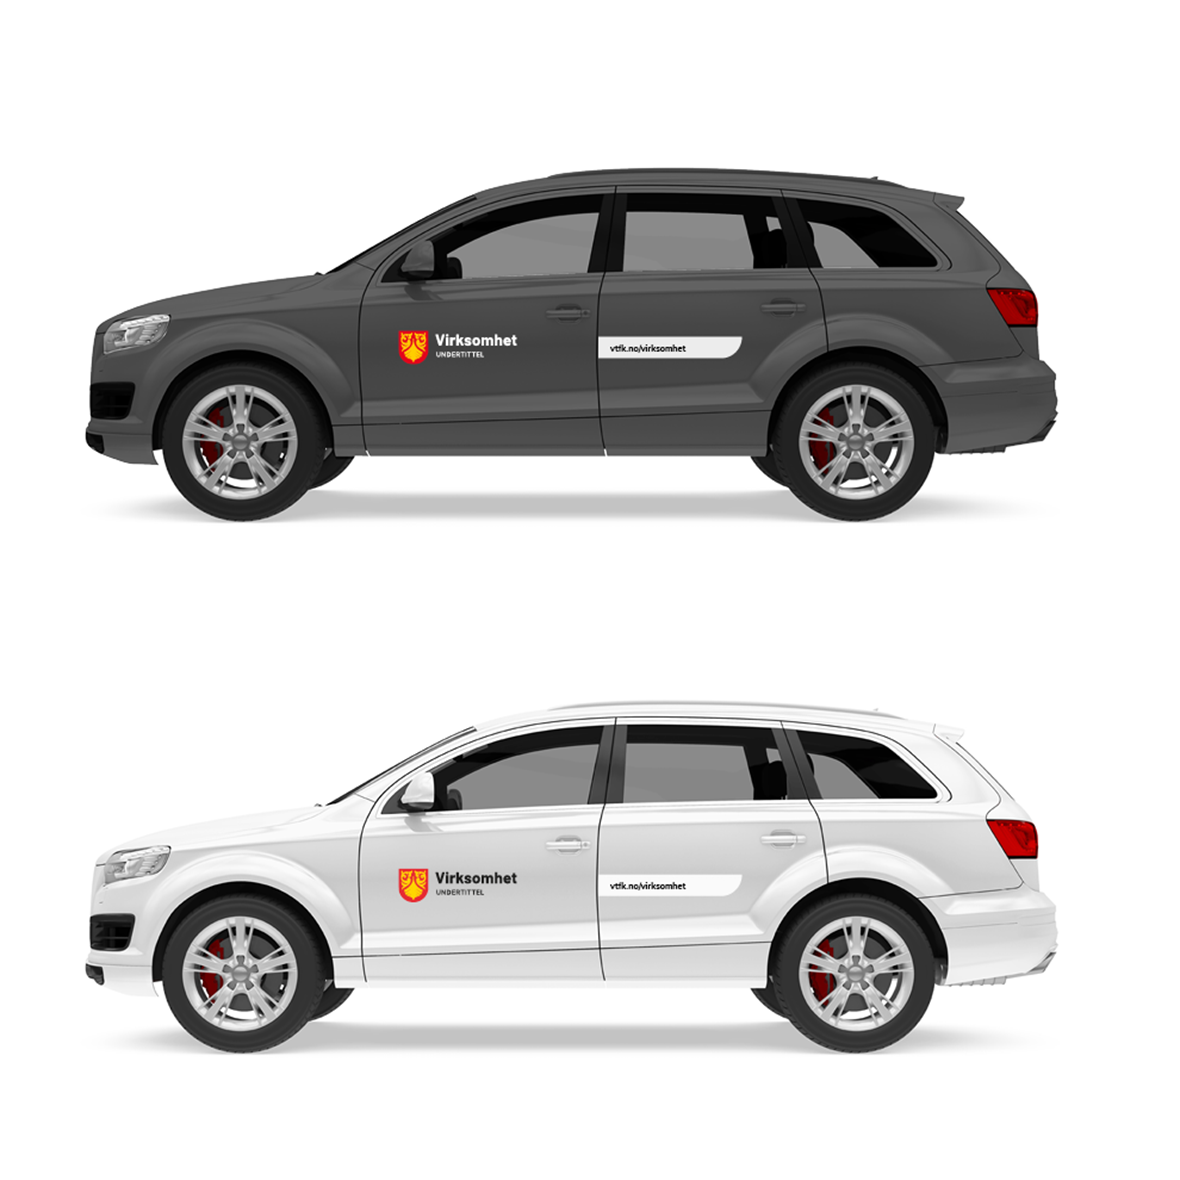 Eksempler på mørk og lys bil med profilering. Virksomhetslogo på førerdør, nettadresse i grafisk form på passasjerdør.